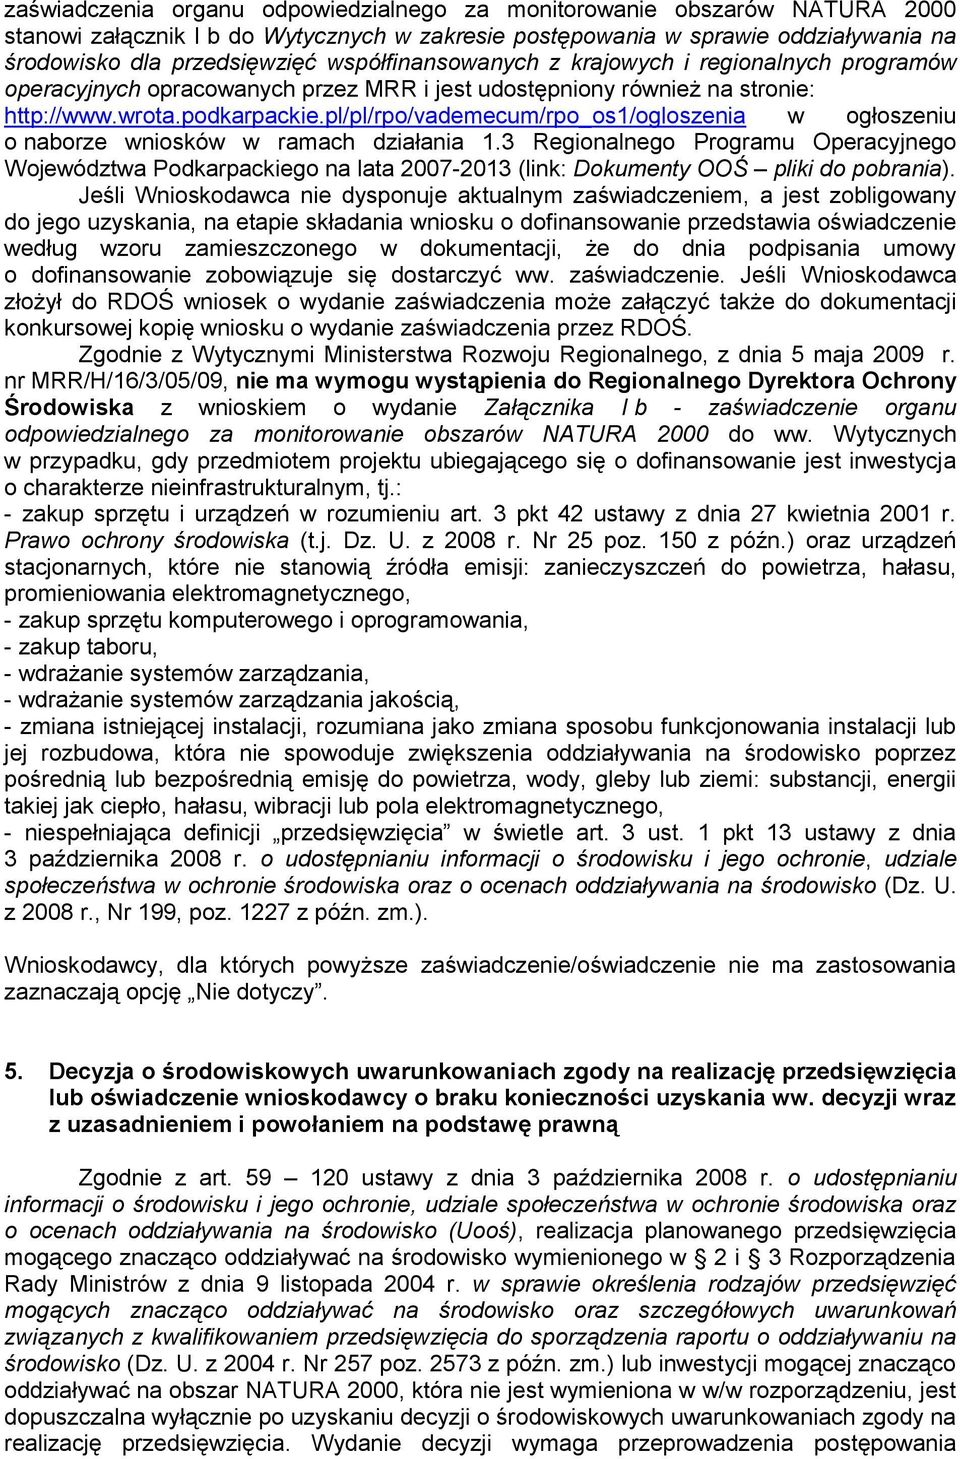 pl/pl/rpo/vademecum/rpo_os1/ogloszenia w ogłoszeniu o naborze wniosków w ramach działania 1.